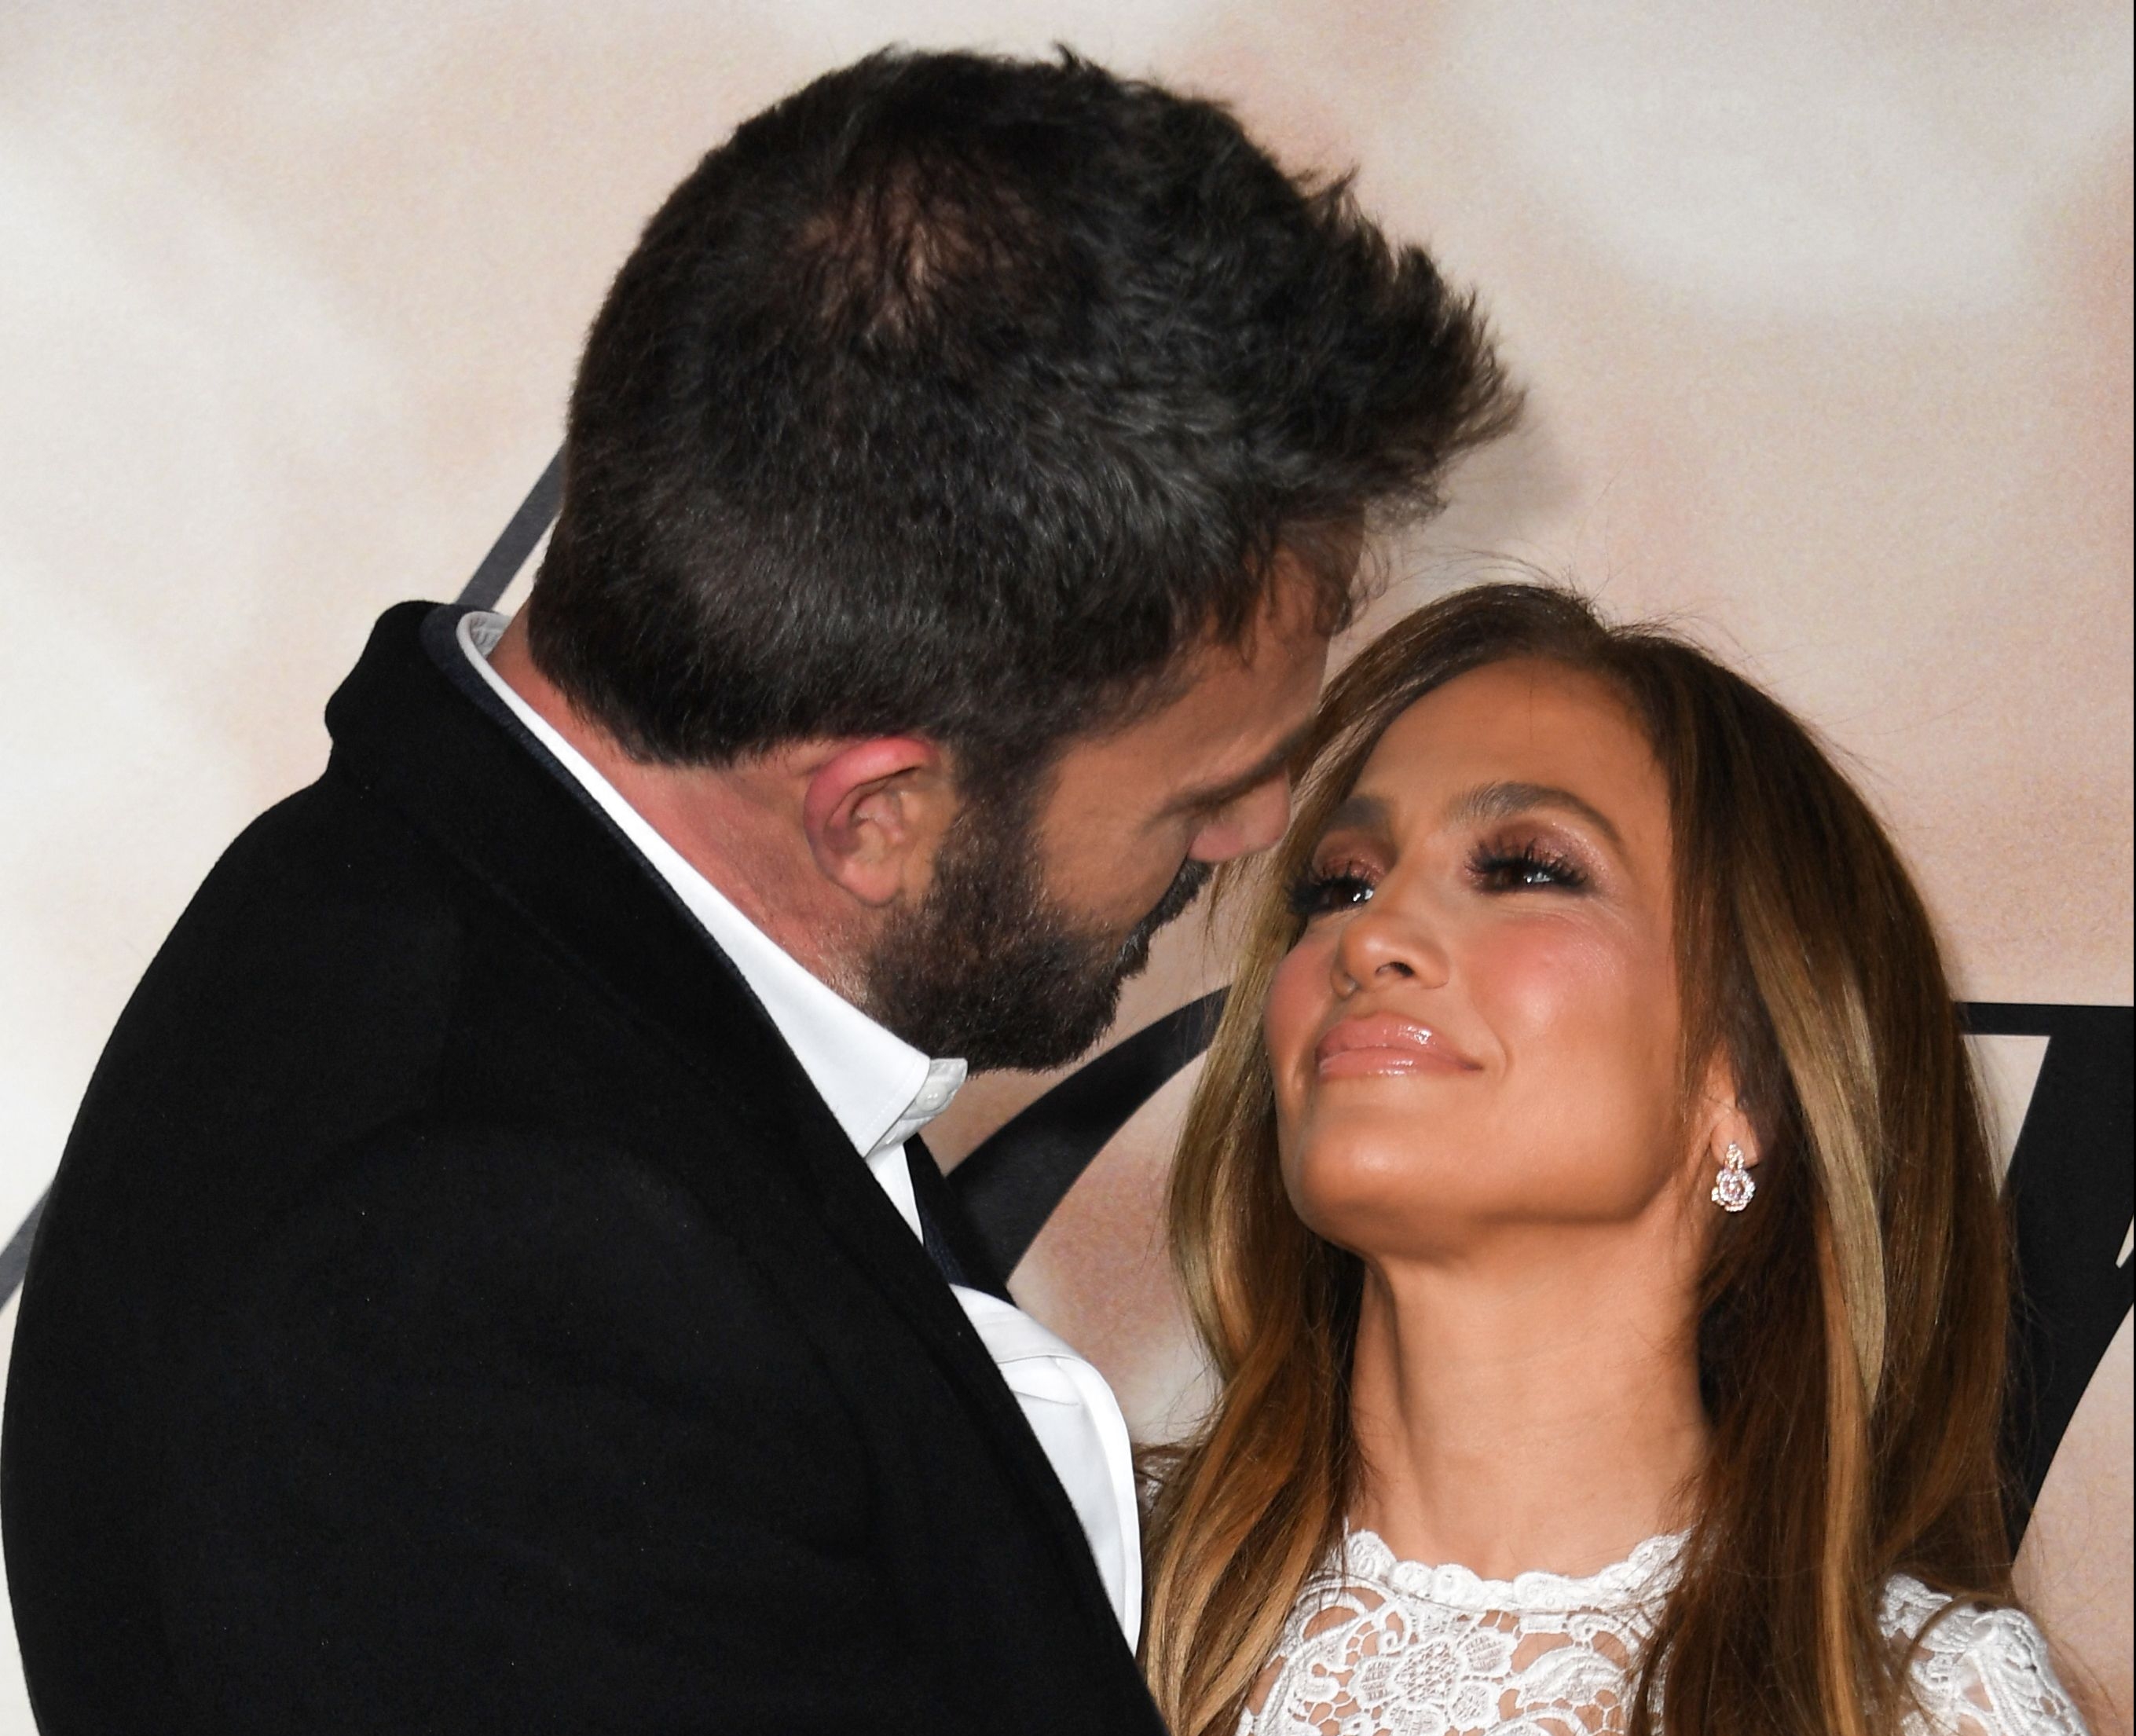 Jennifer Lopez y Ben Affleck confirmaron su compromiso y ahora salen detalles de un curioso acuerdo prenupcial.  (Foto Prensa Libre: Valerie Macon / AFP)